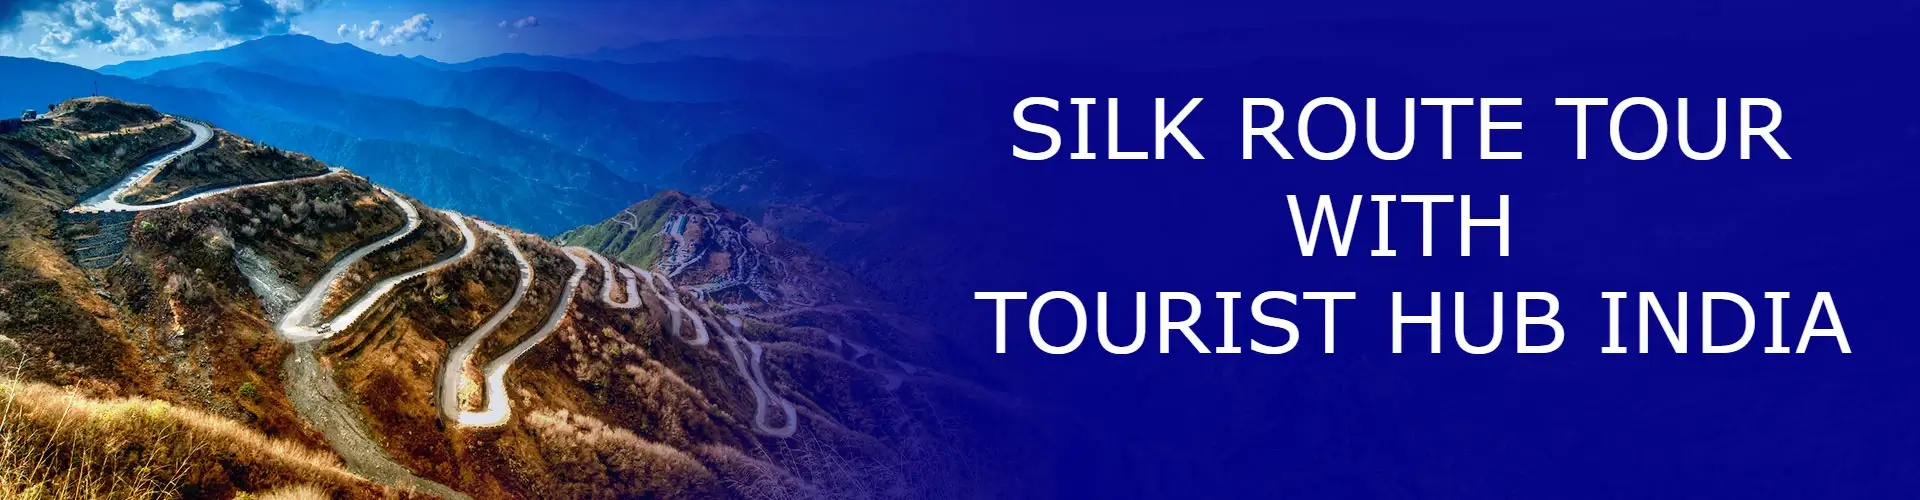 siliguri tour package from kolkata